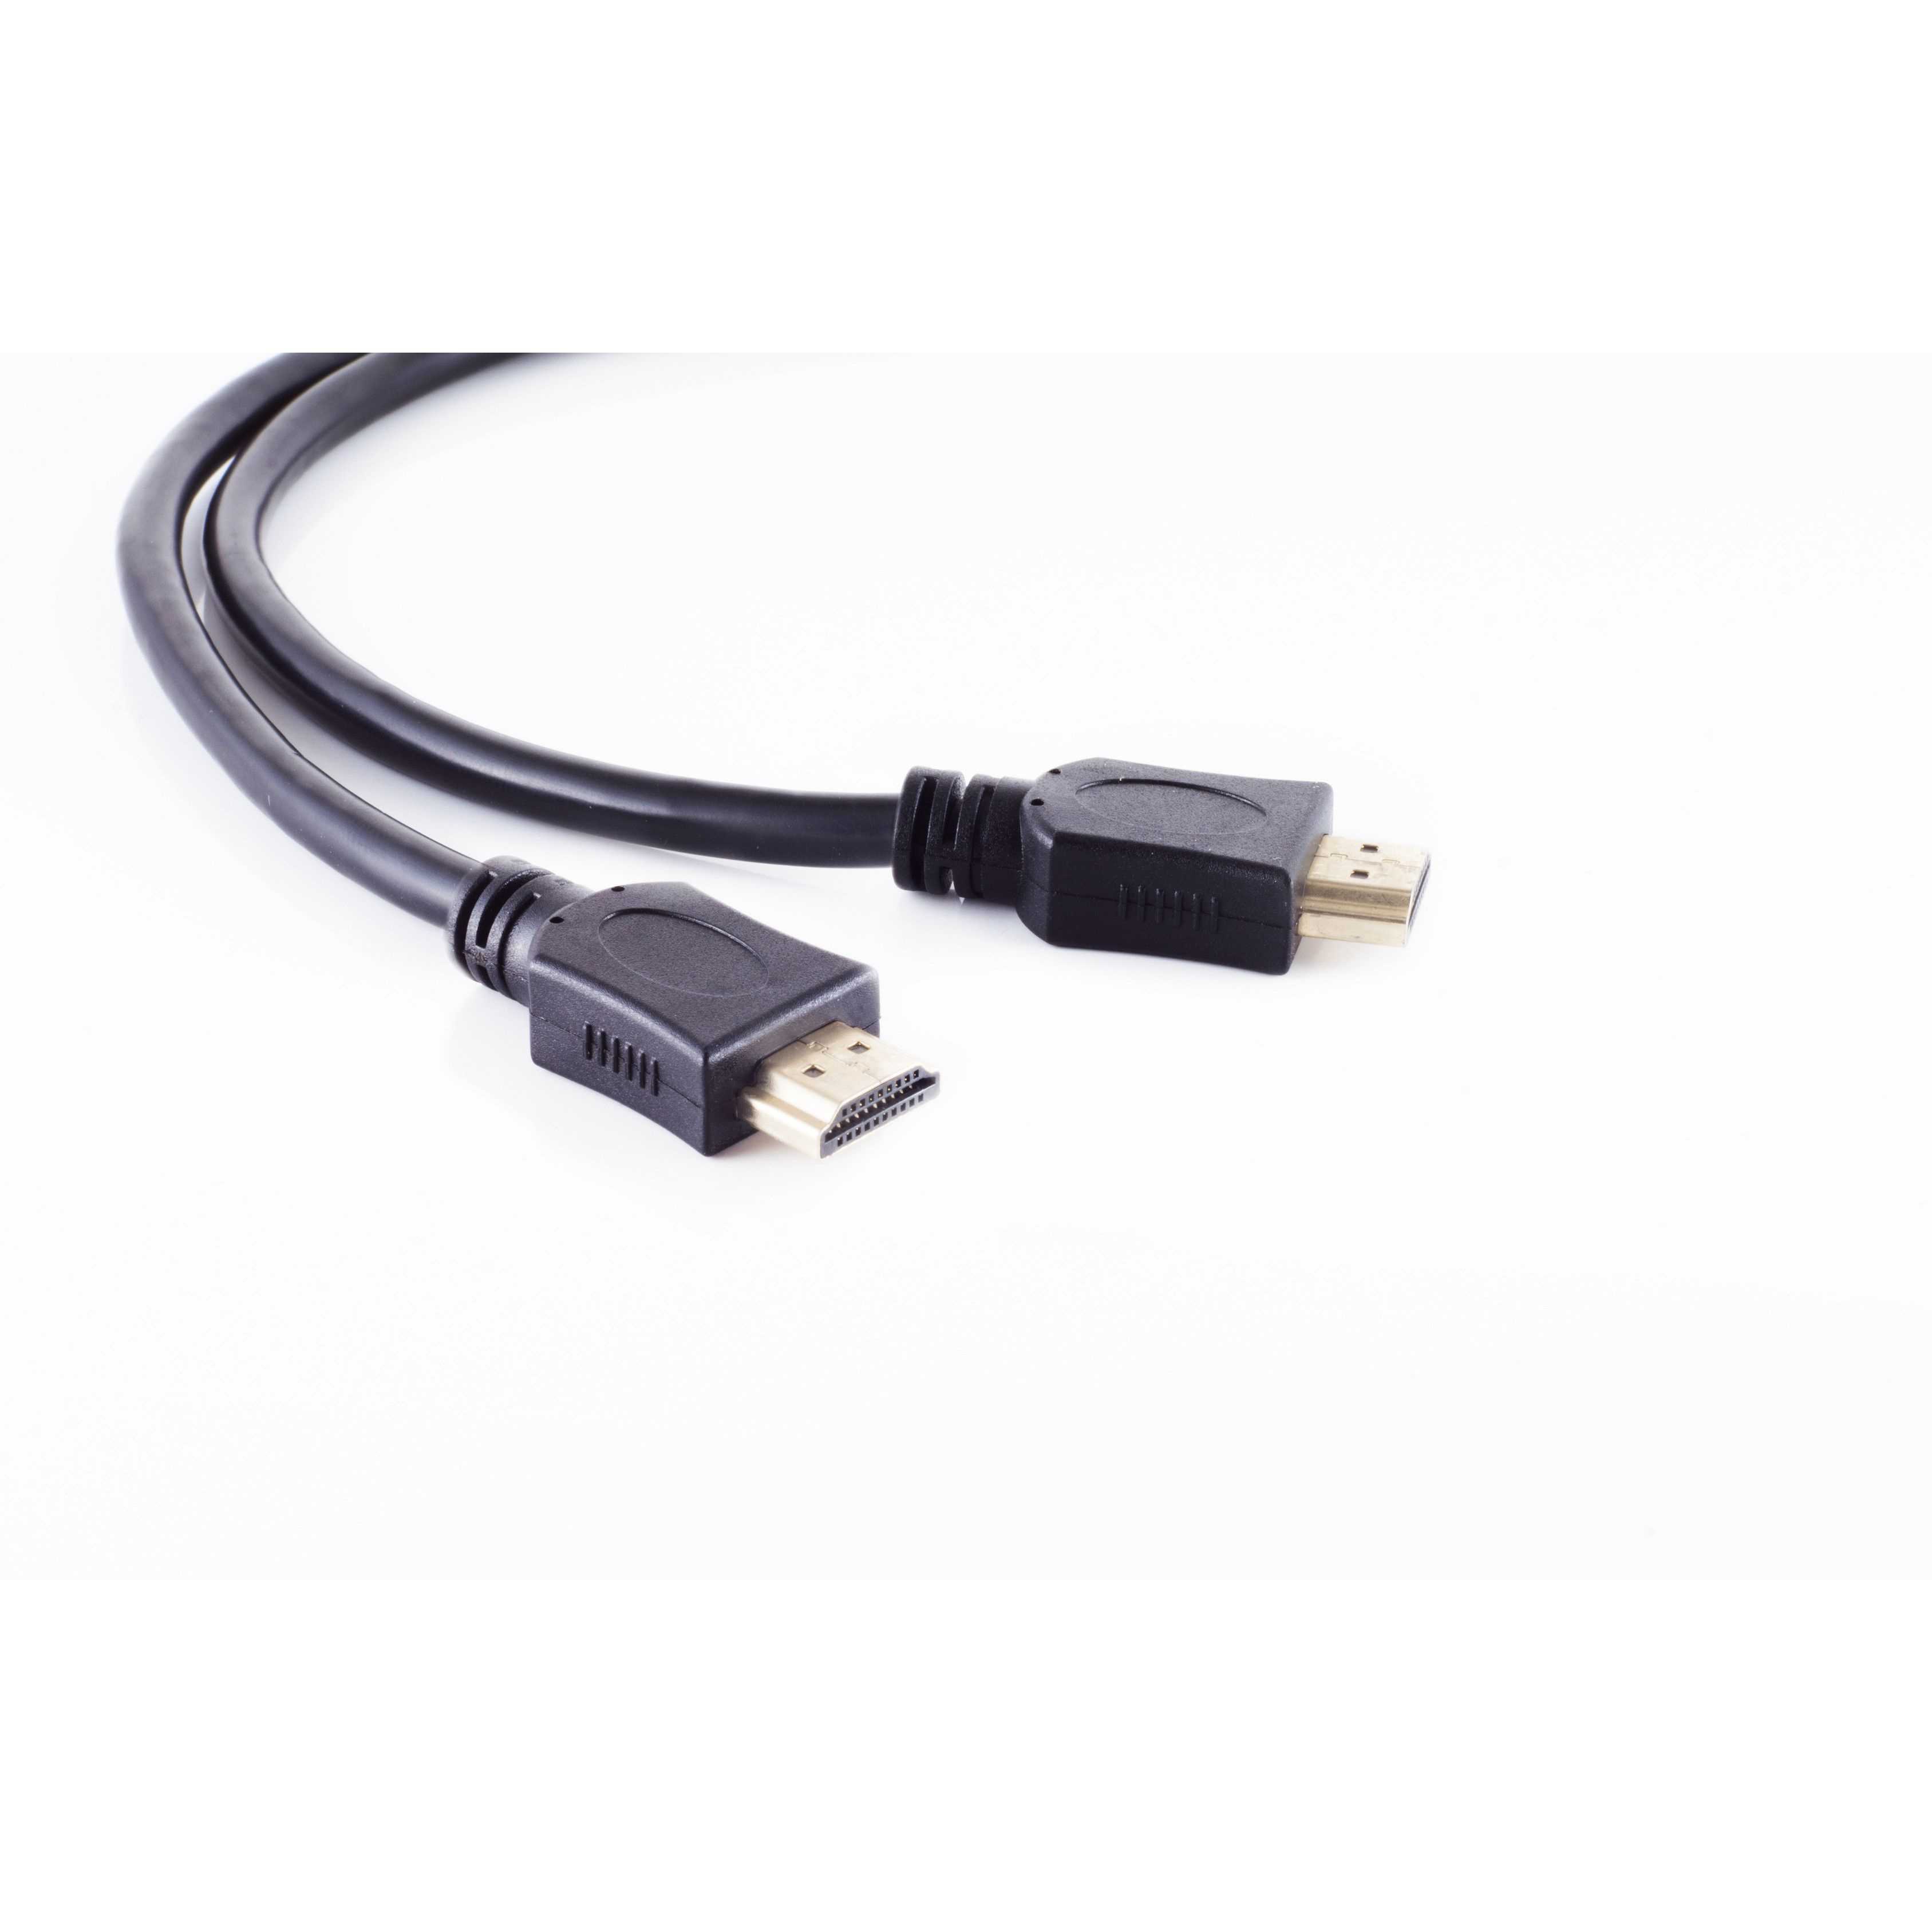 S/CONN MAXIMUM CONNECTIVITY HDMI / HEAC verg. A-Stecker 0,5m Kabel HDMI HDMI A-Stecker